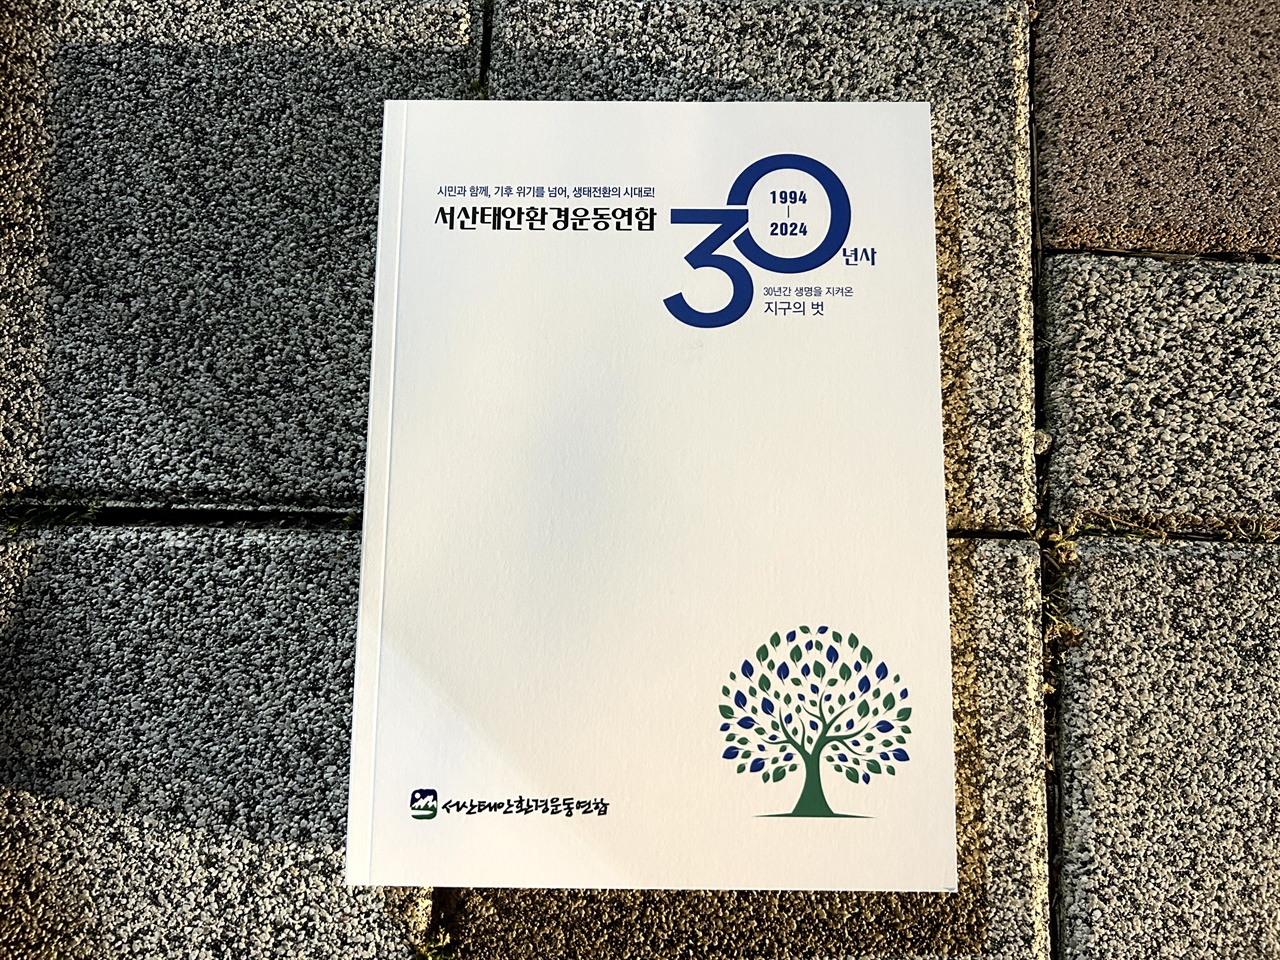 서산태안환경운동연합(공동의장, 남현우, 박정섭, 원우) 이 창립 30주년을 맞아 그동안의 활동을 담은 백서를 발간했다.